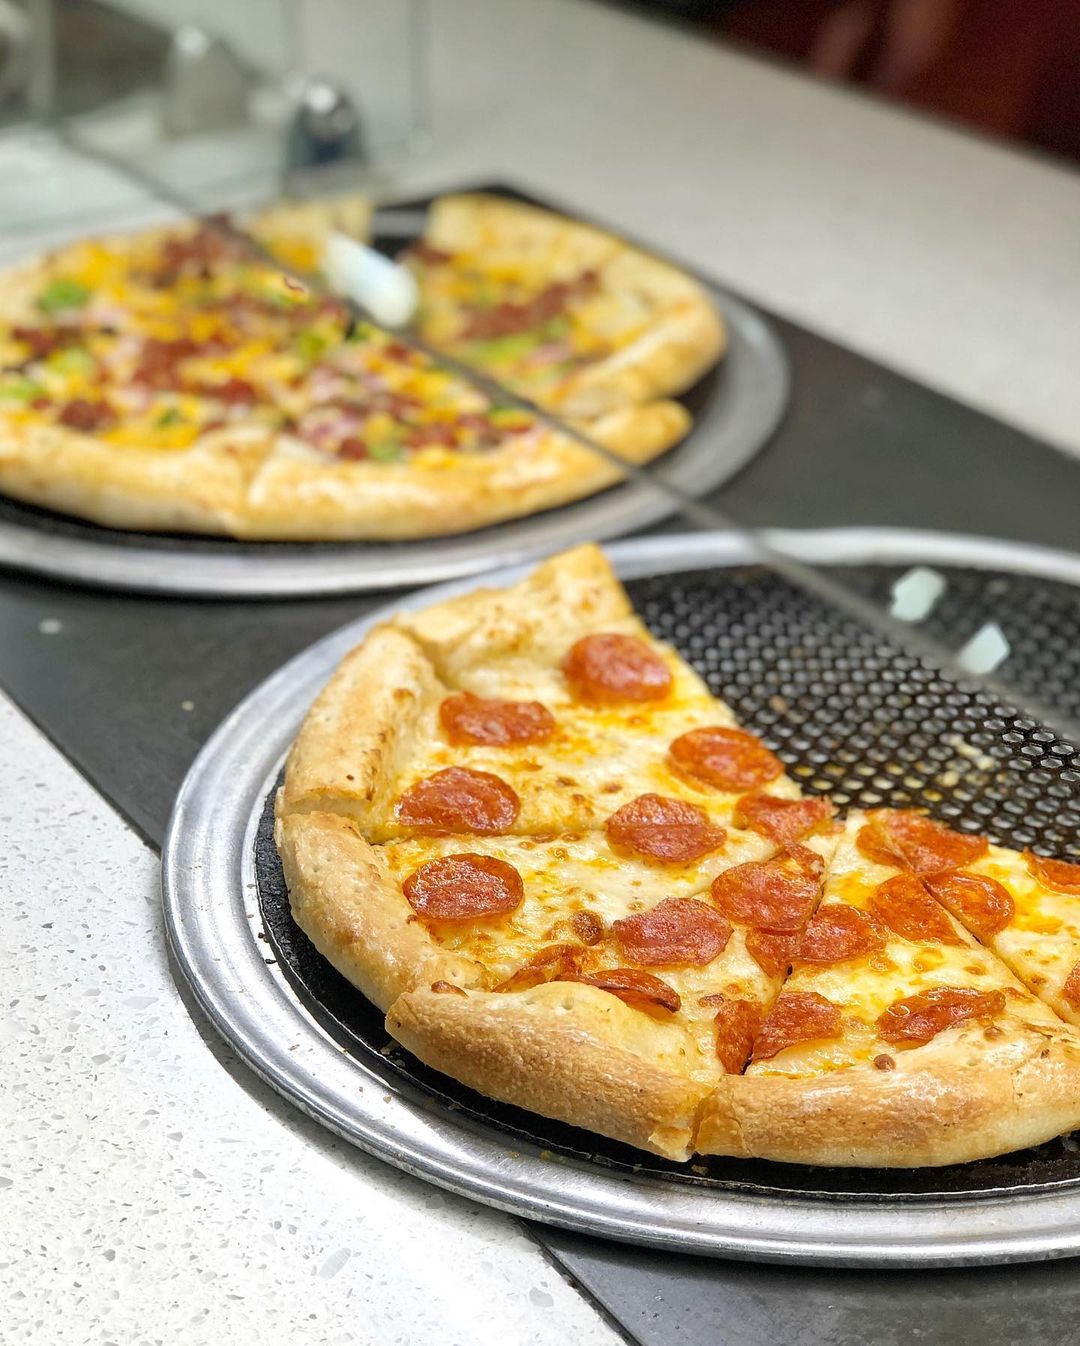 Cici's पिज़्ज़ा - आप सब खा सकते हैं